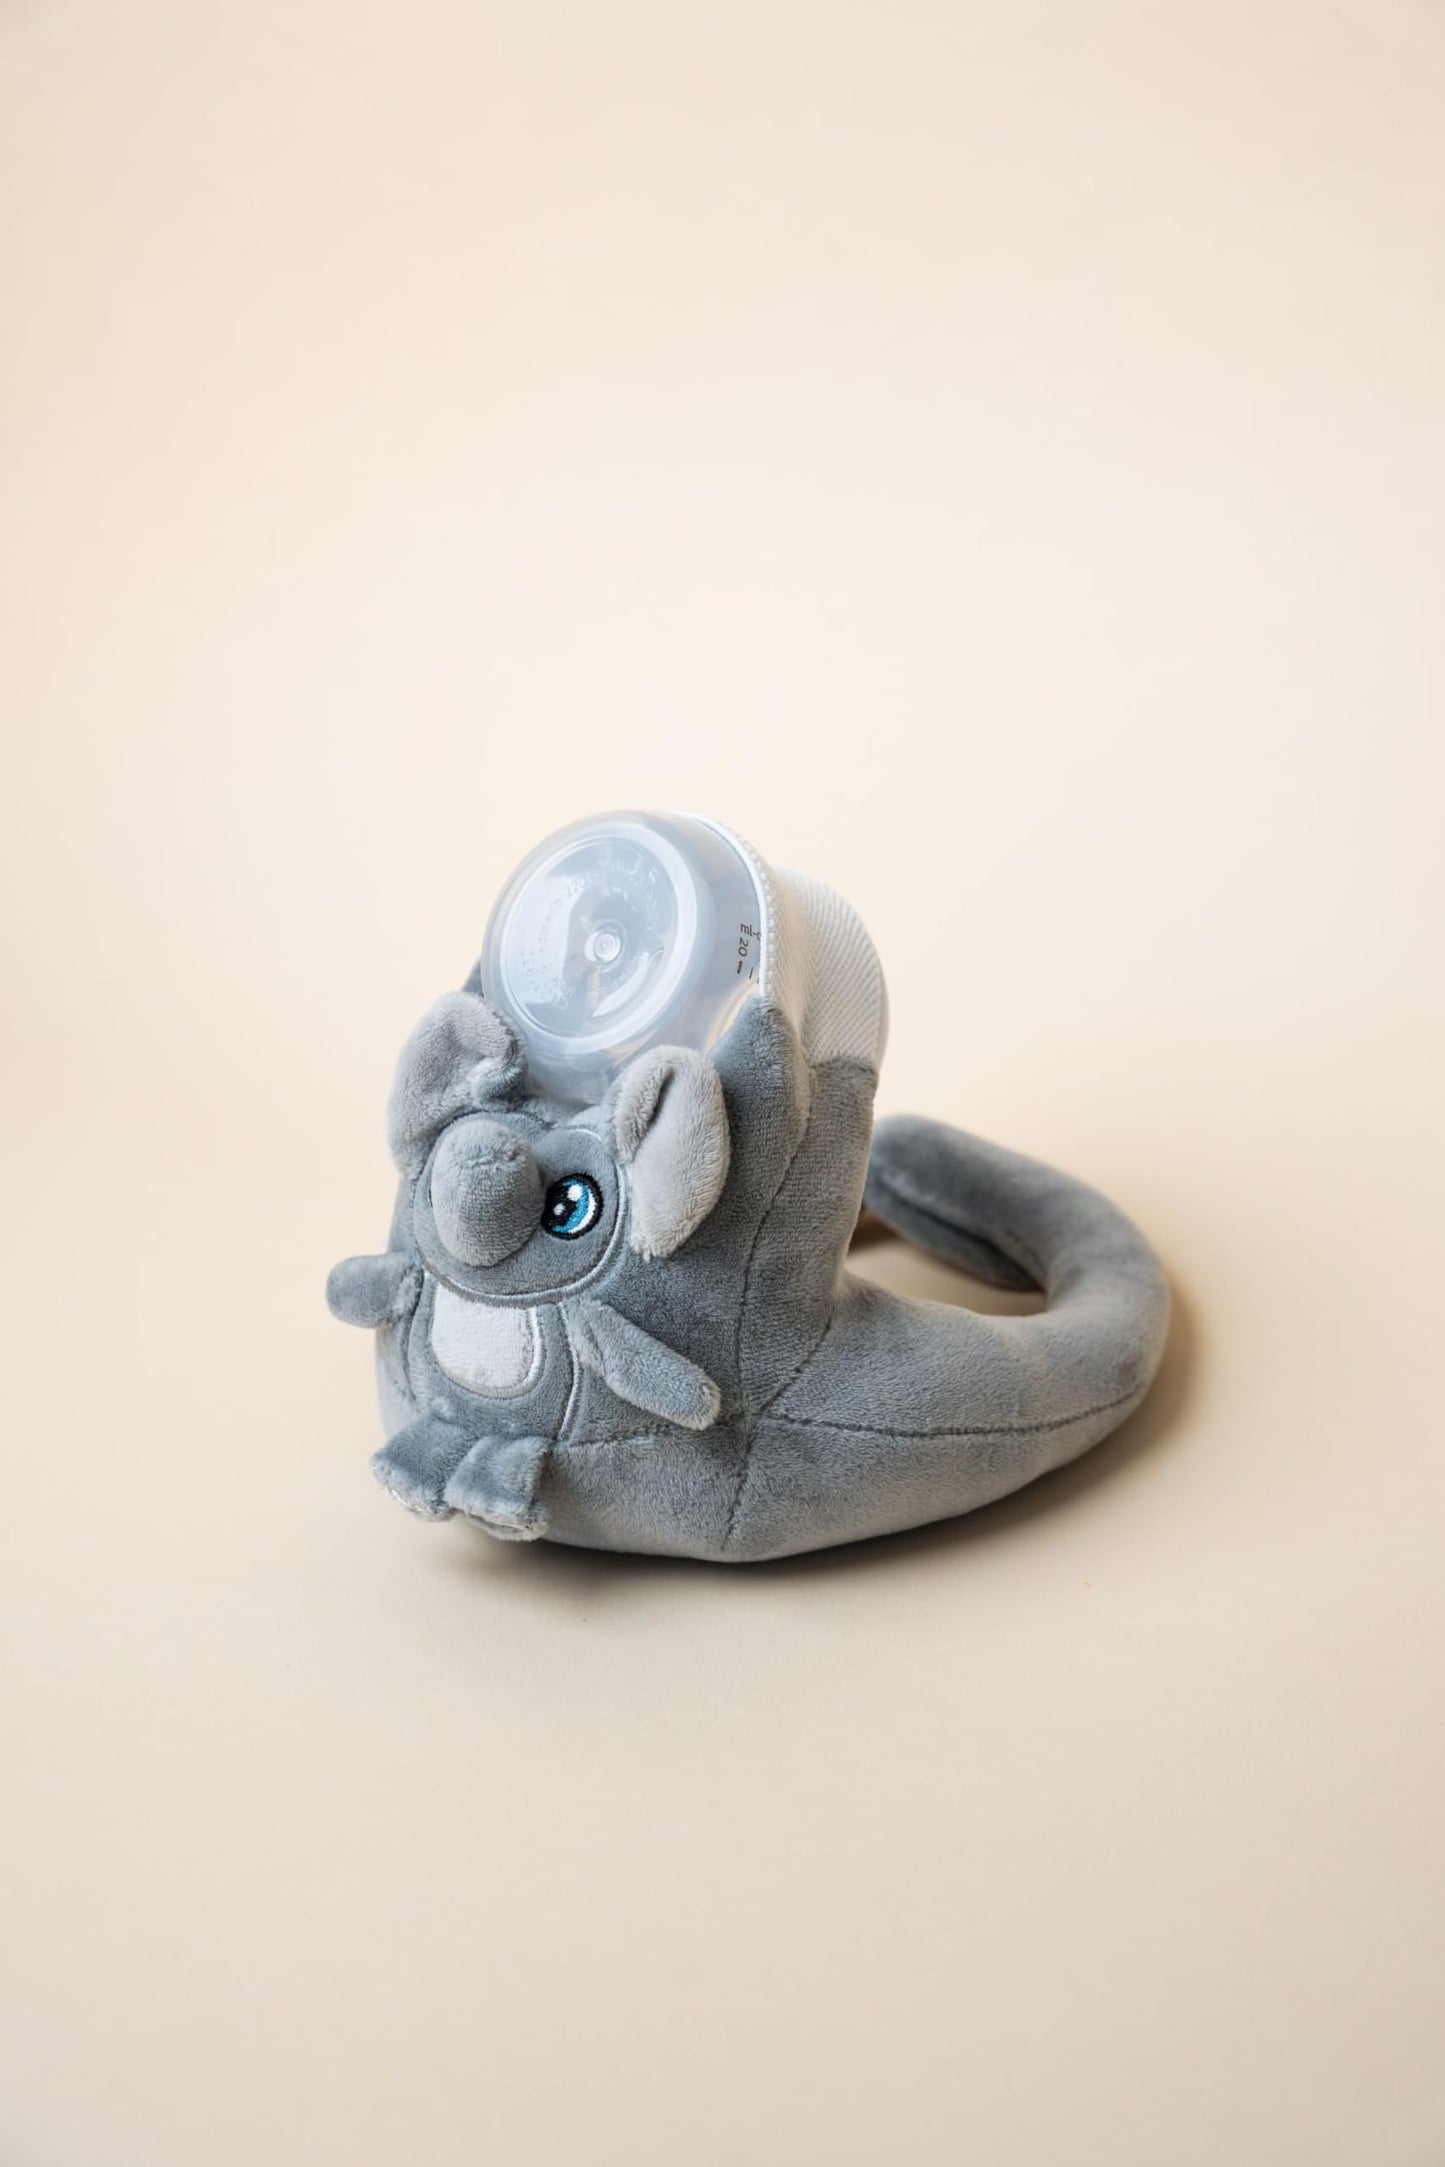 PRODUCTO 705 Nuestro soporte para biberón Fuzzy para autoalimentación - Sistema de cierre de velcro para un ajuste seguro y ajustable - Adorable bebé amigo para alimentarse y jugar (elefante)